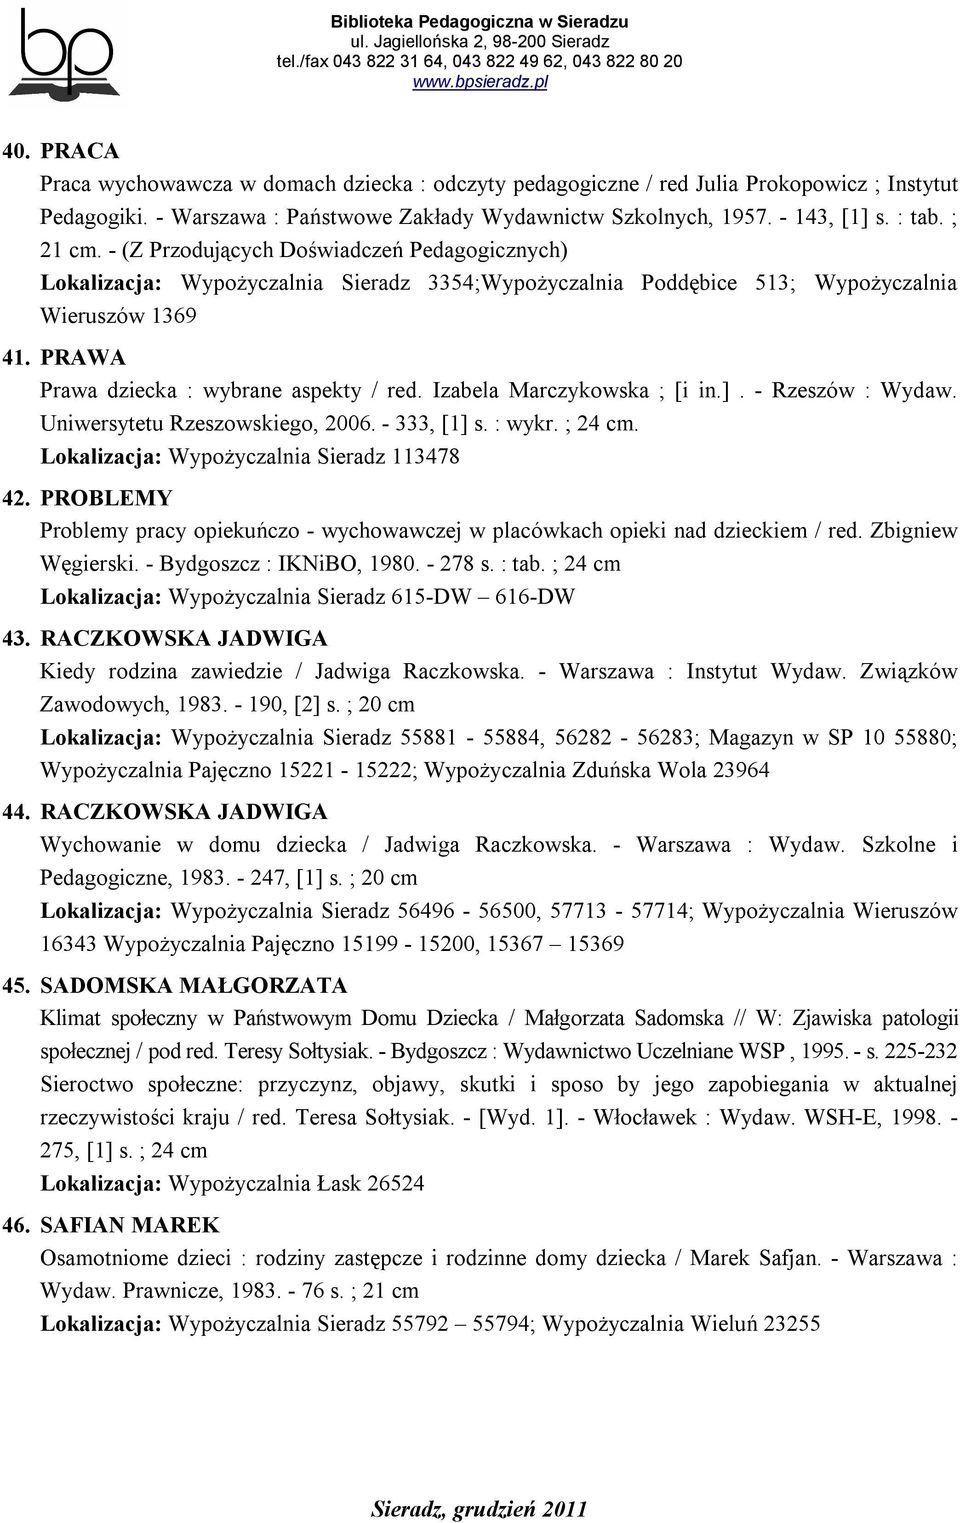 PRAWA Prawa dziecka : wybrane aspekty / red. Izabela Marczykowska ; [i in.]. - Rzeszów : Wydaw. Uniwersytetu Rzeszowskiego, 2006. - 333, [1] s. : wykr. ; 24 cm.